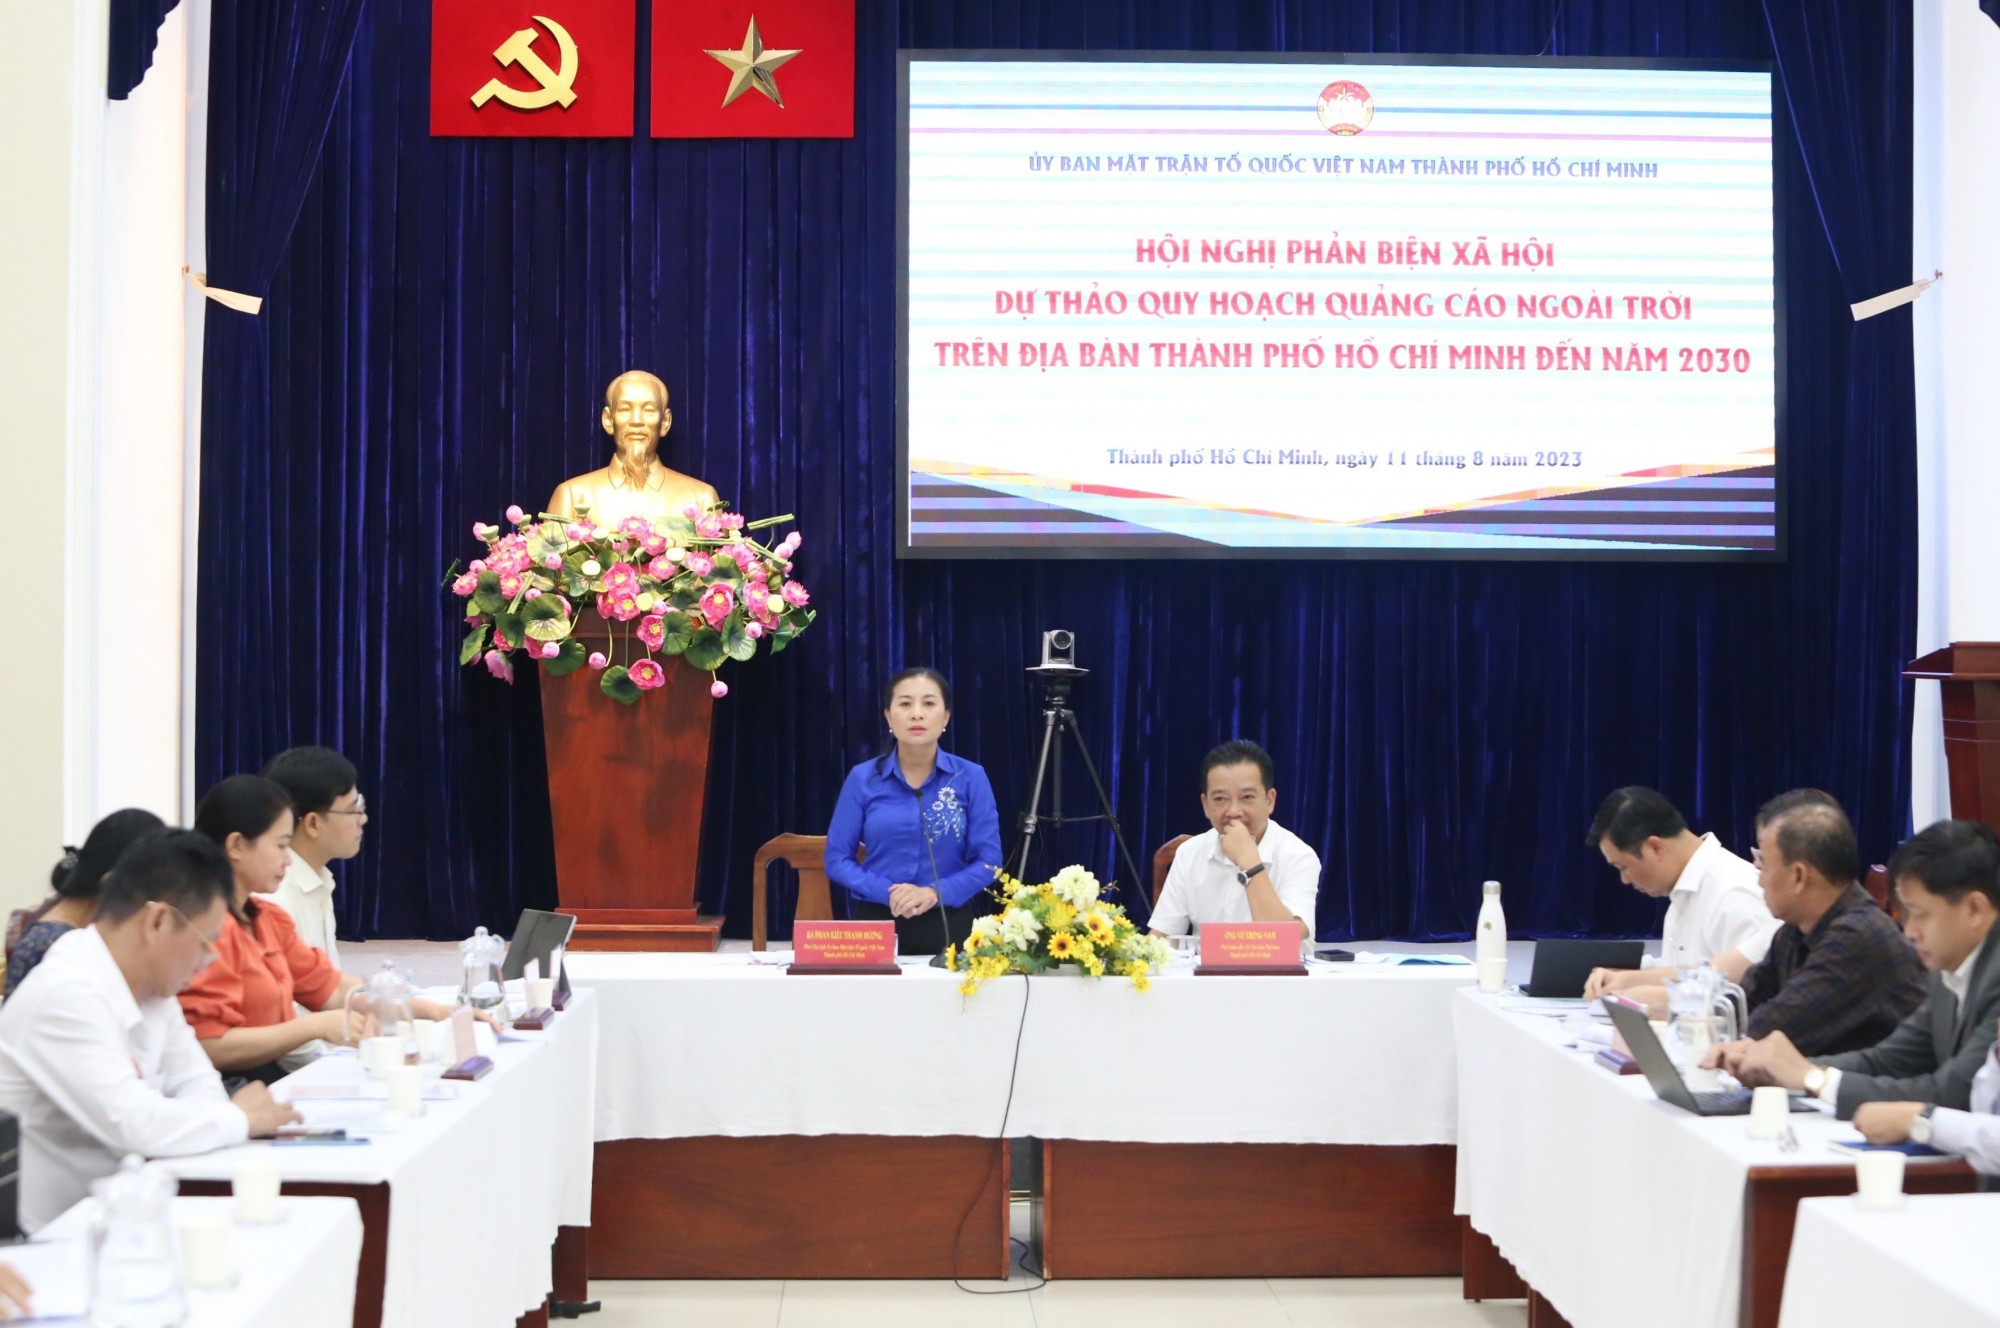 Hội nghị phản biện xã hội về dự thảo Quy hoạch quảng cáo ngoài trời trên địa bàn TPHCM đến năm 2030 tại Ủy ban MTTQ Việt Nam TPHCM ngày 11/8 - Ảnh: Quốc Ngọc